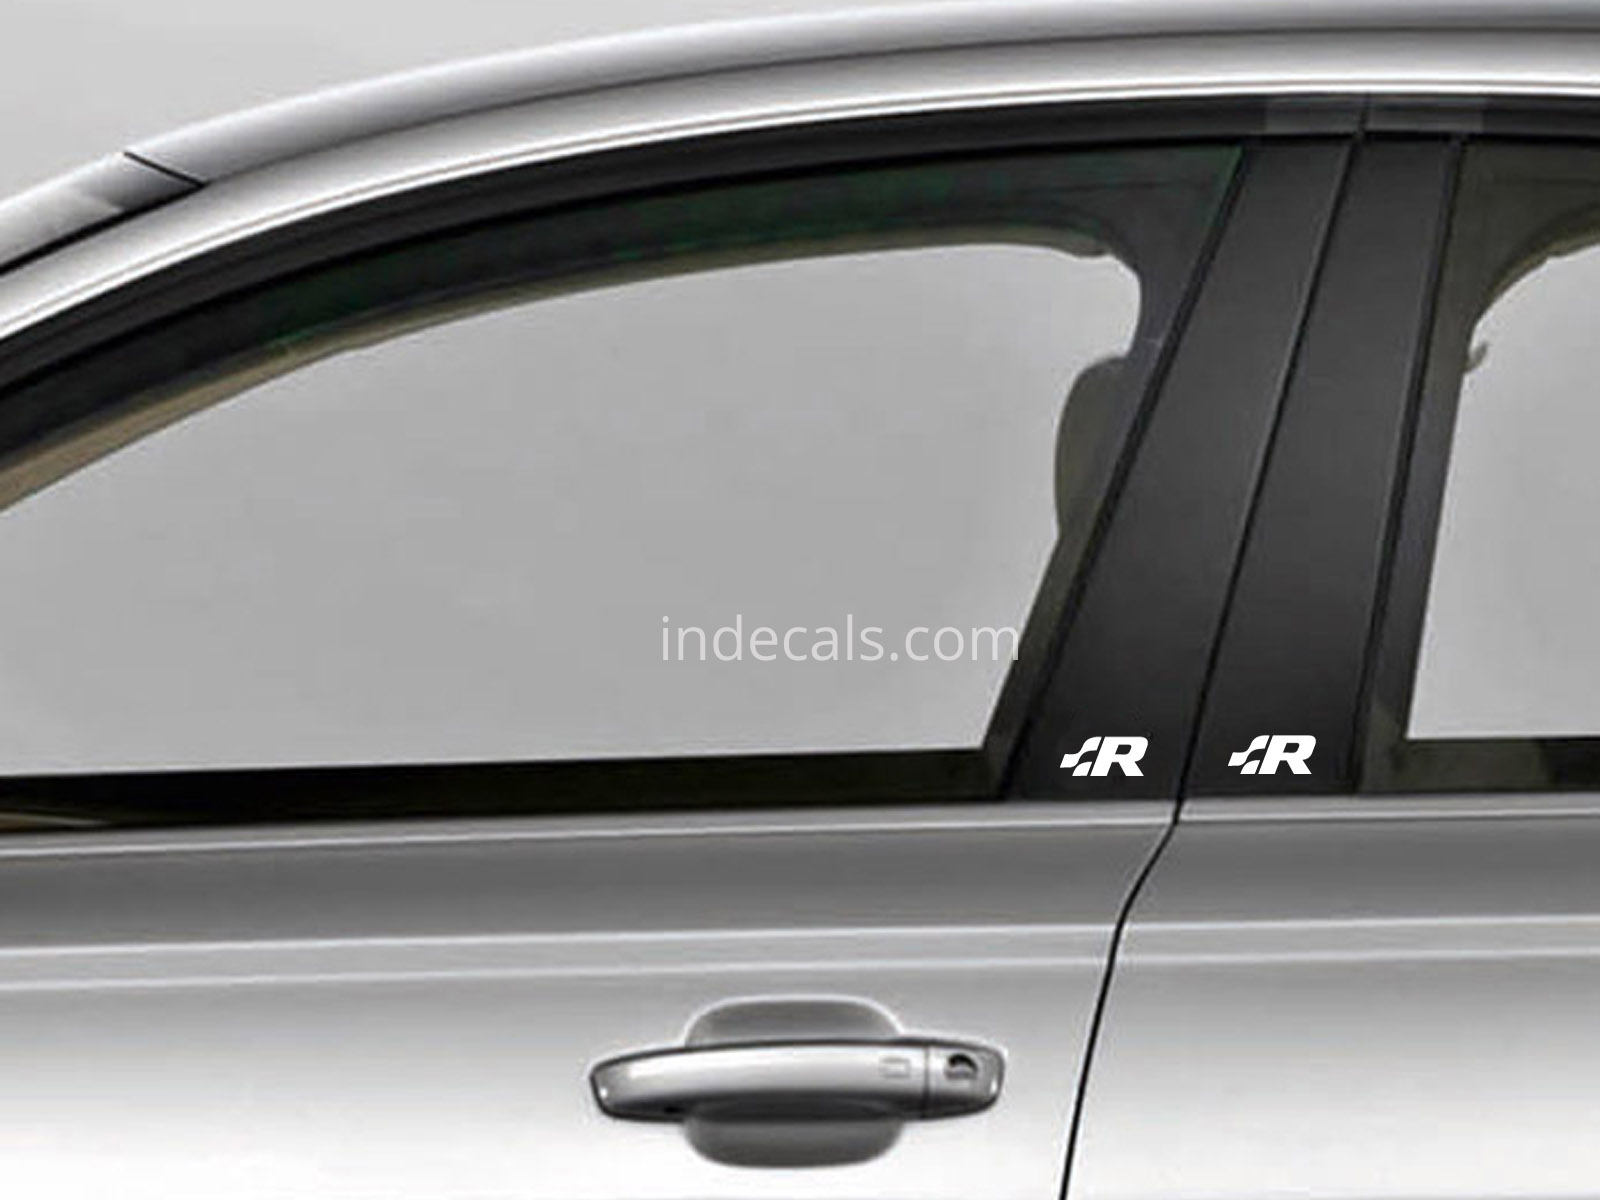 2 x Volkswagen Racing stickers for Window Trim